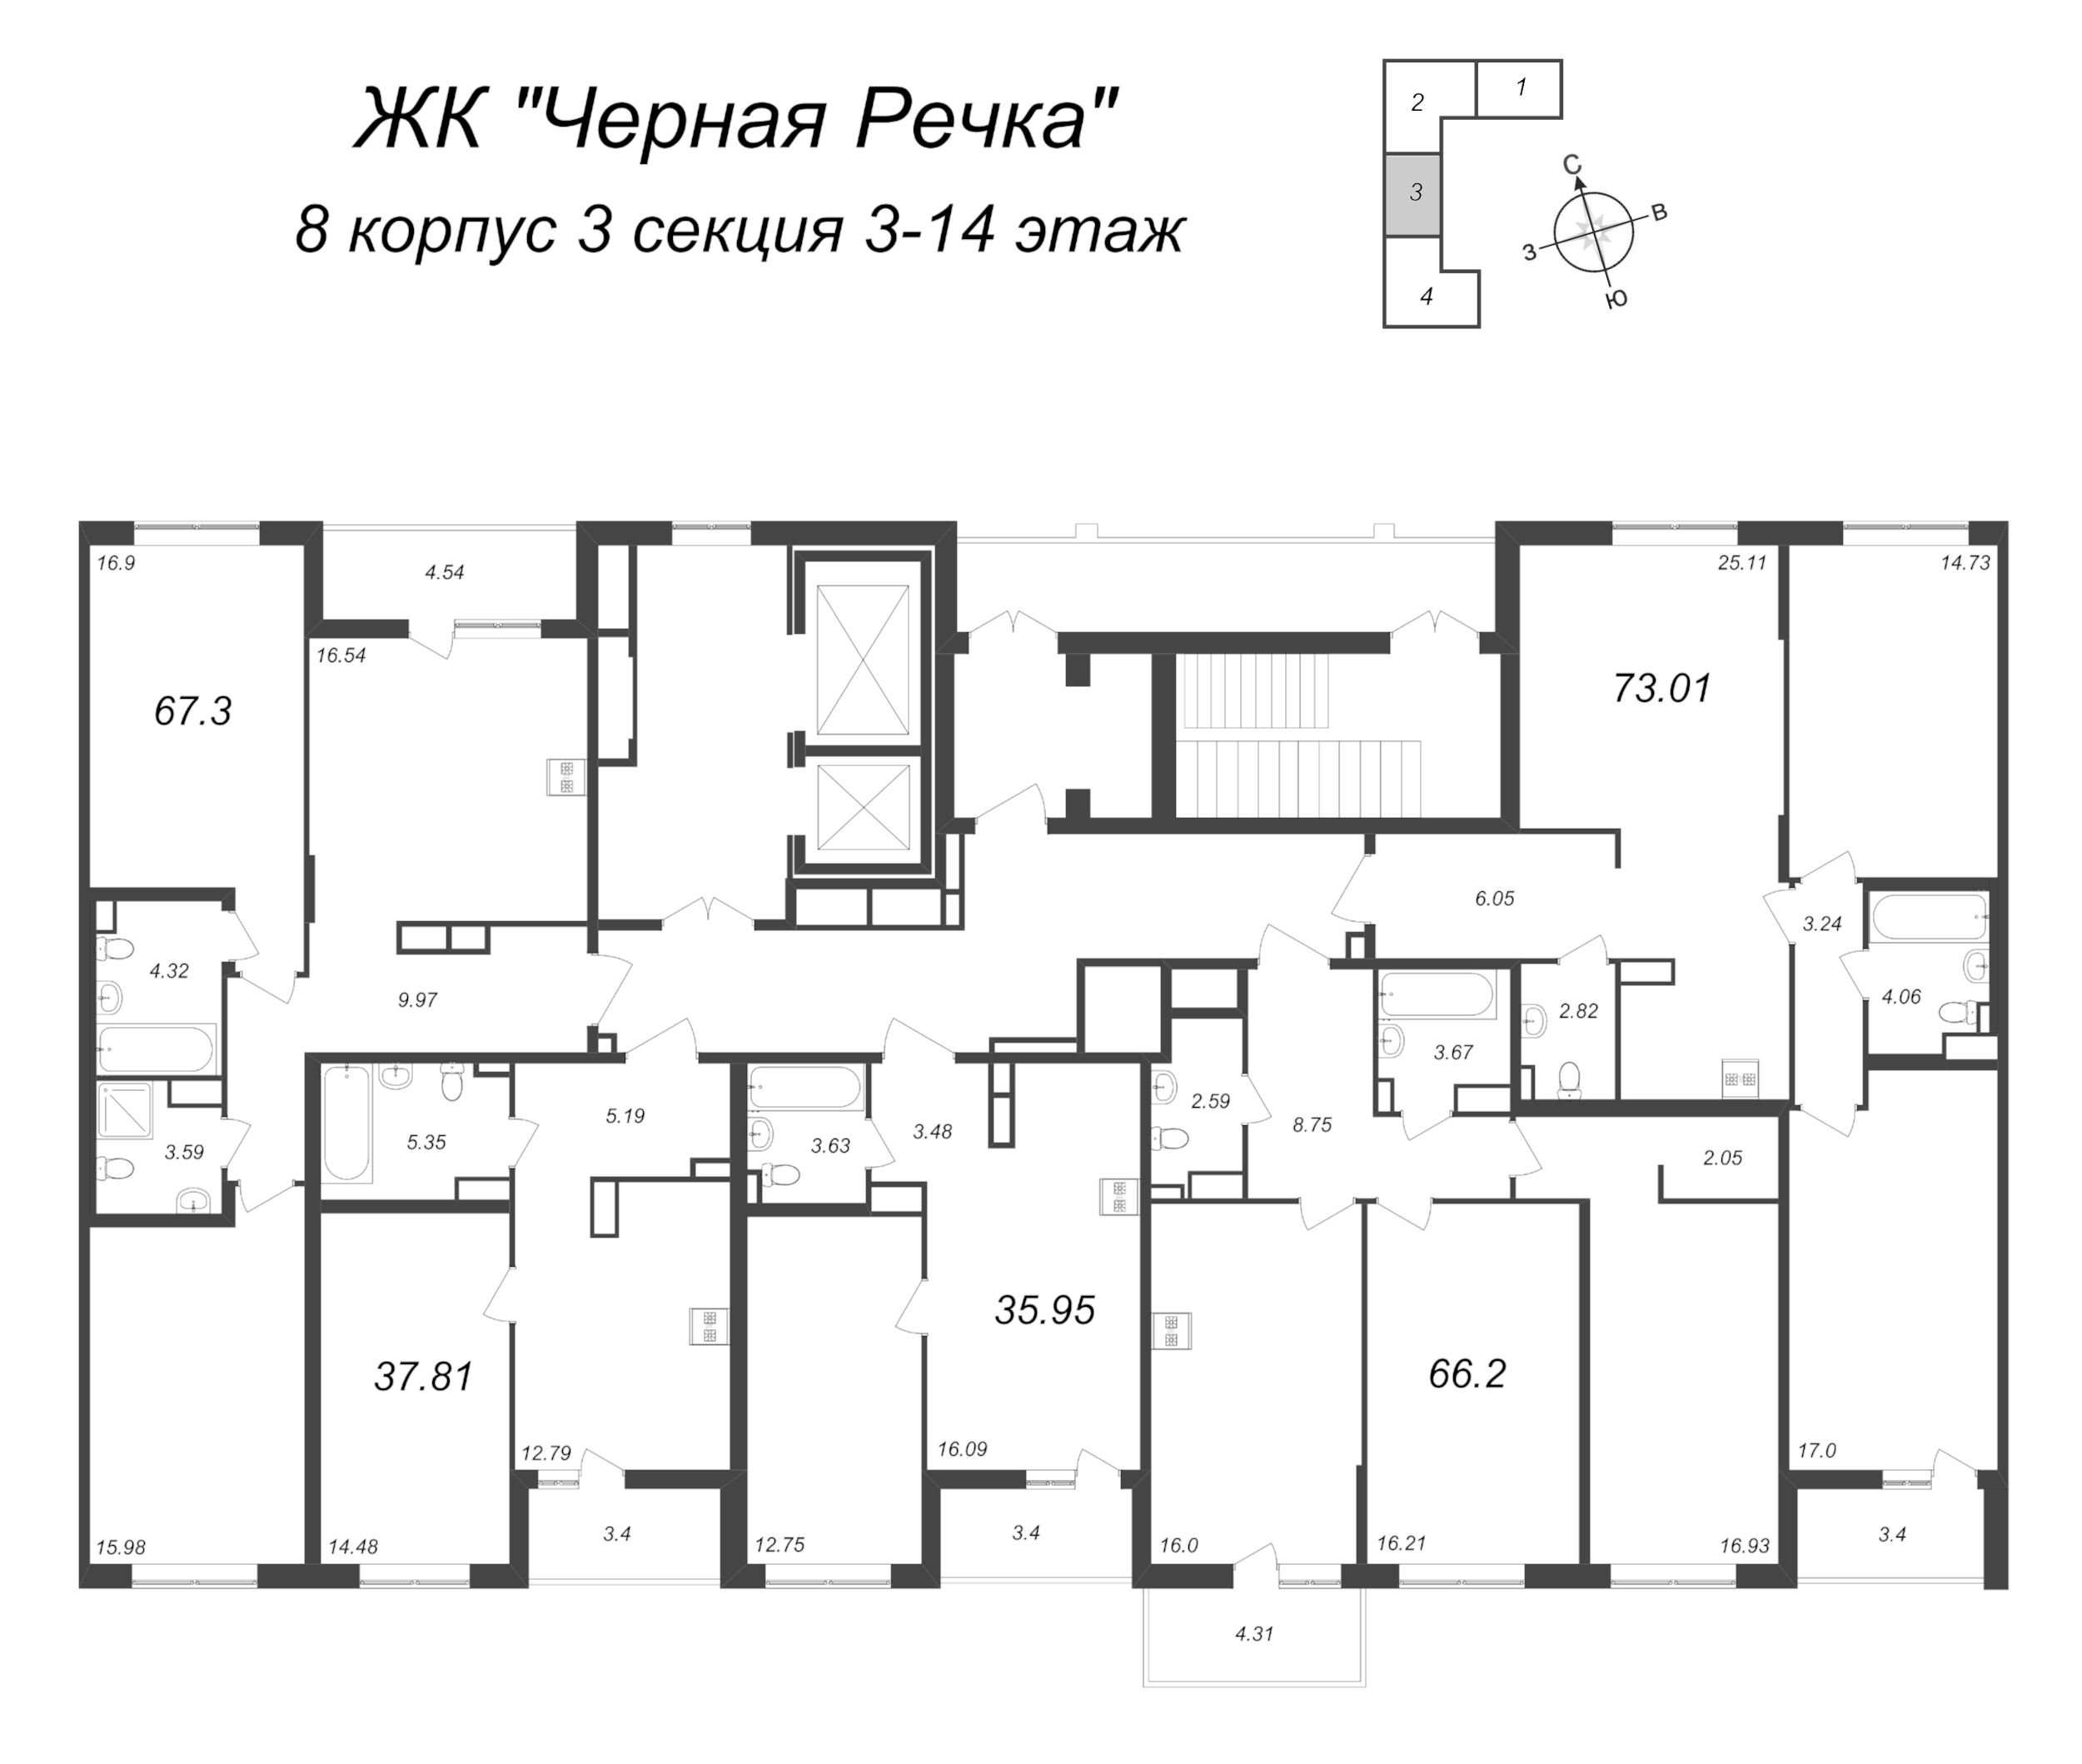 1-комнатная квартира, 37.81 м² в ЖК "Чёрная речка" - планировка этажа